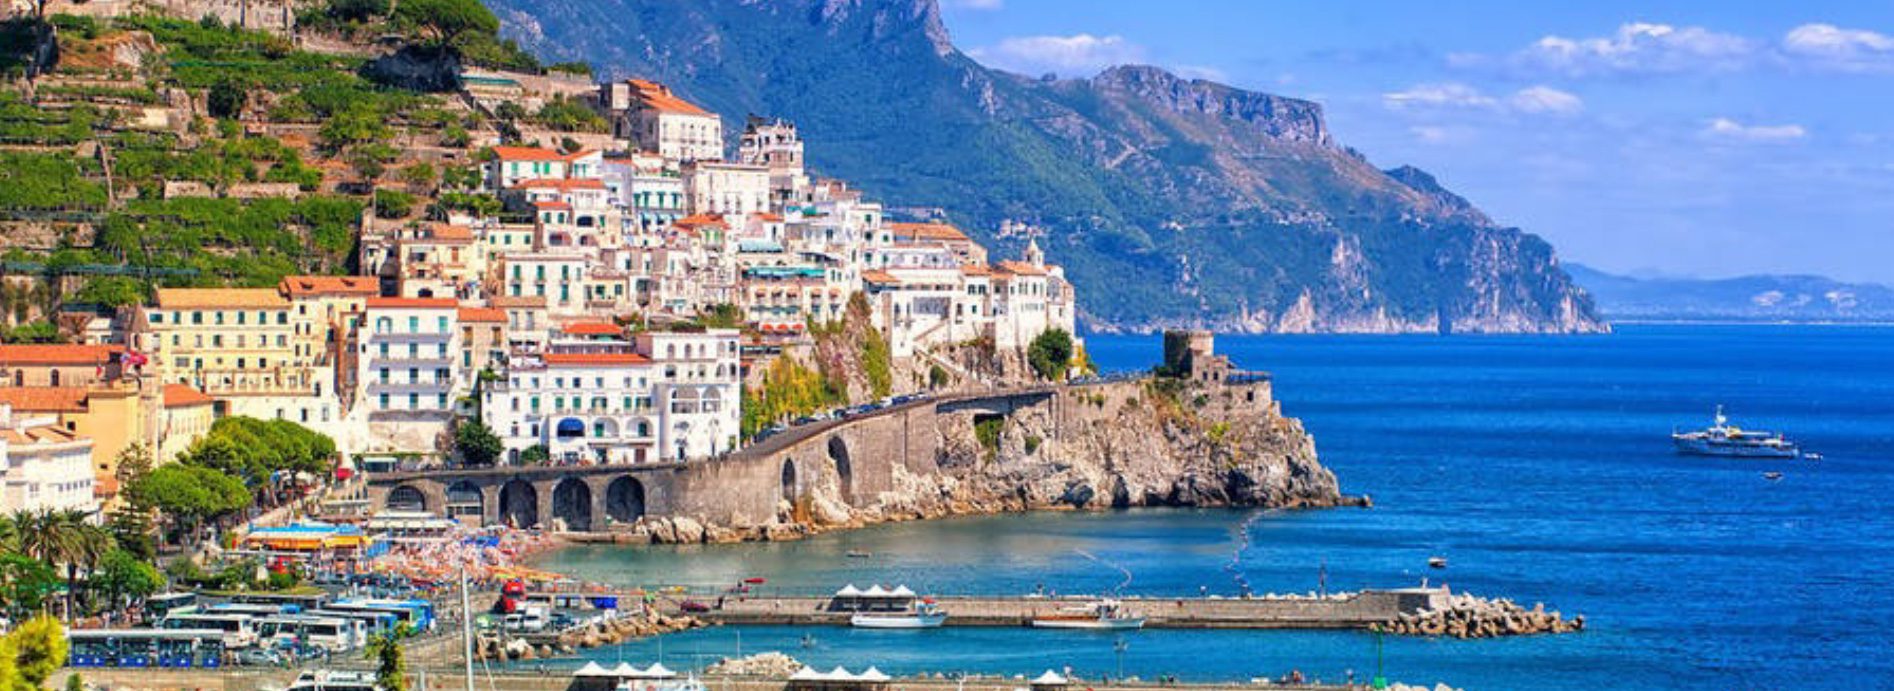 Amalfi Coast Tours Italy